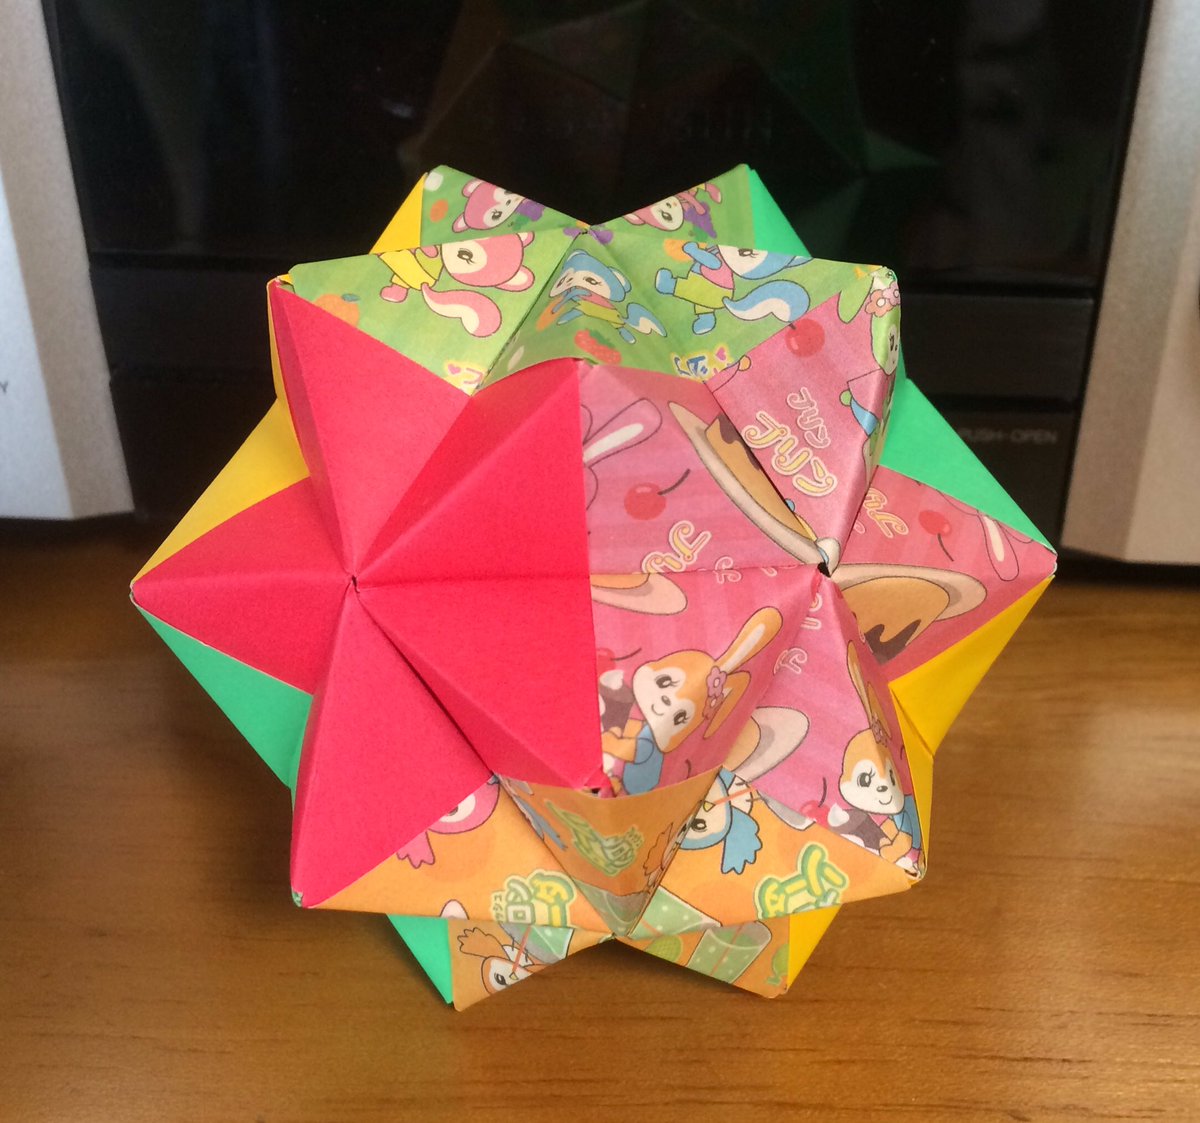 虹色工房 ユニット折り紙 北條敏彰 著 より 21二分割ユニット1 6色組 です 6色5枚組 折り紙 は レトロな模様のと無地を3色づつで 星形が出るのが 面白いですねー 次は 10色組 どんな組み合わせにしようか 考えるのが楽しみ Origami